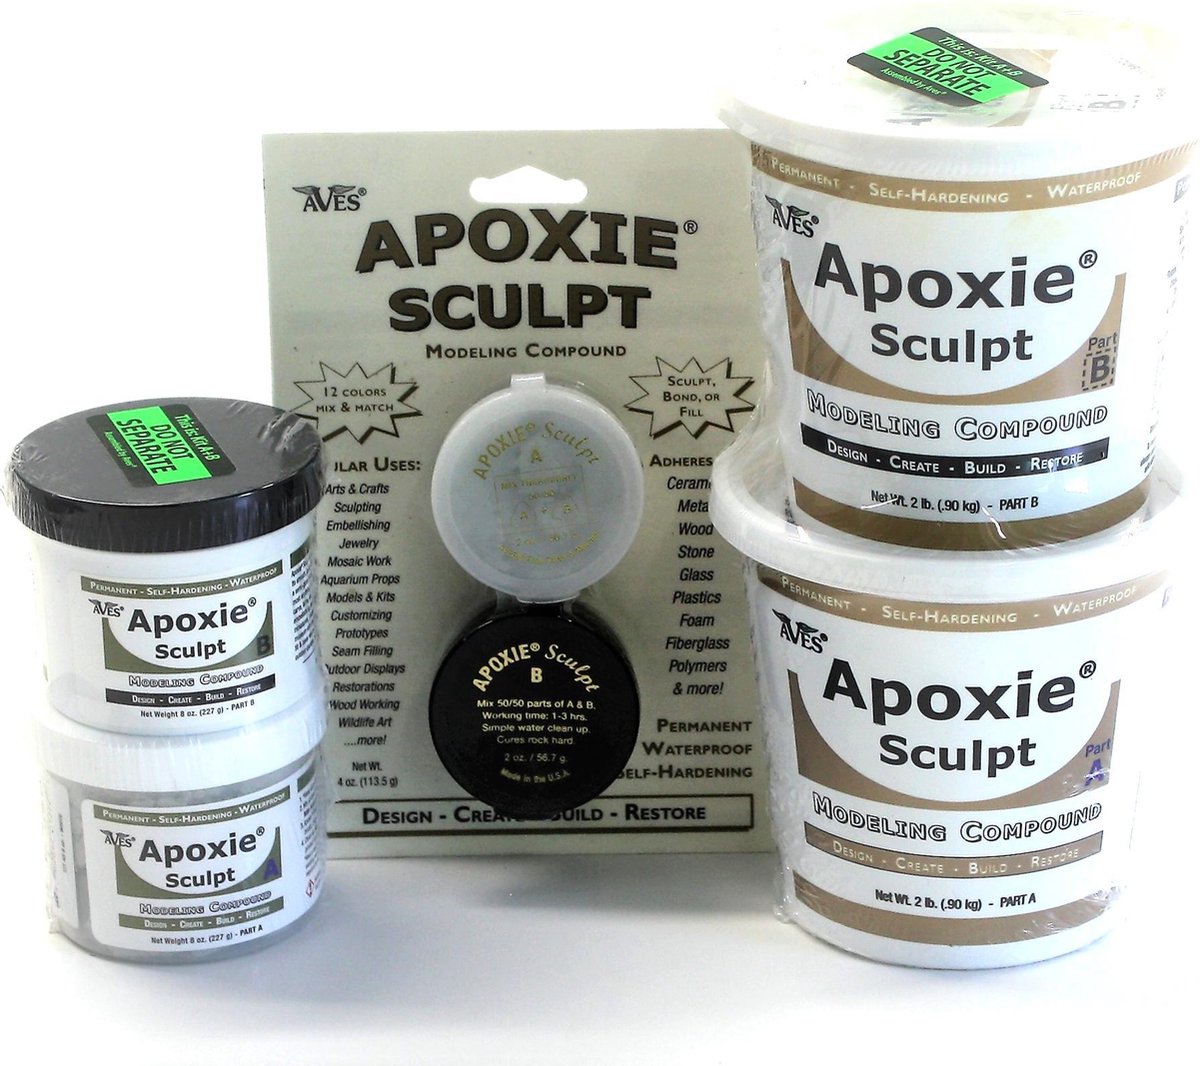 Apoxie Sculpt - Kleur: Zilvergrijs, Verpakking: 1 lb (454 gram) - Aves